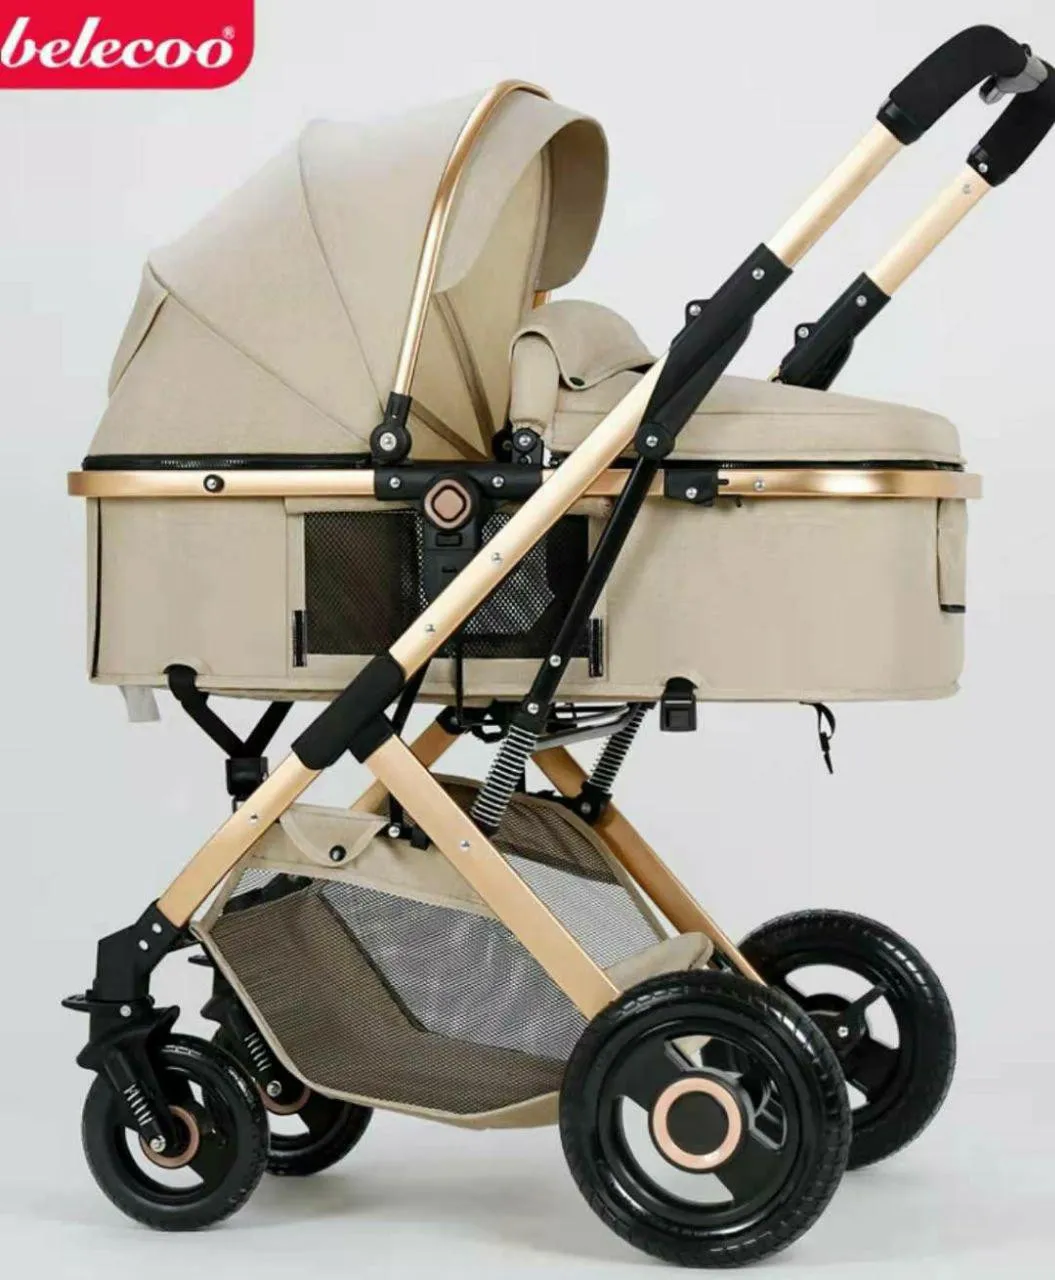 Детская коляска Belecoo HA321 (цвет серый)#1